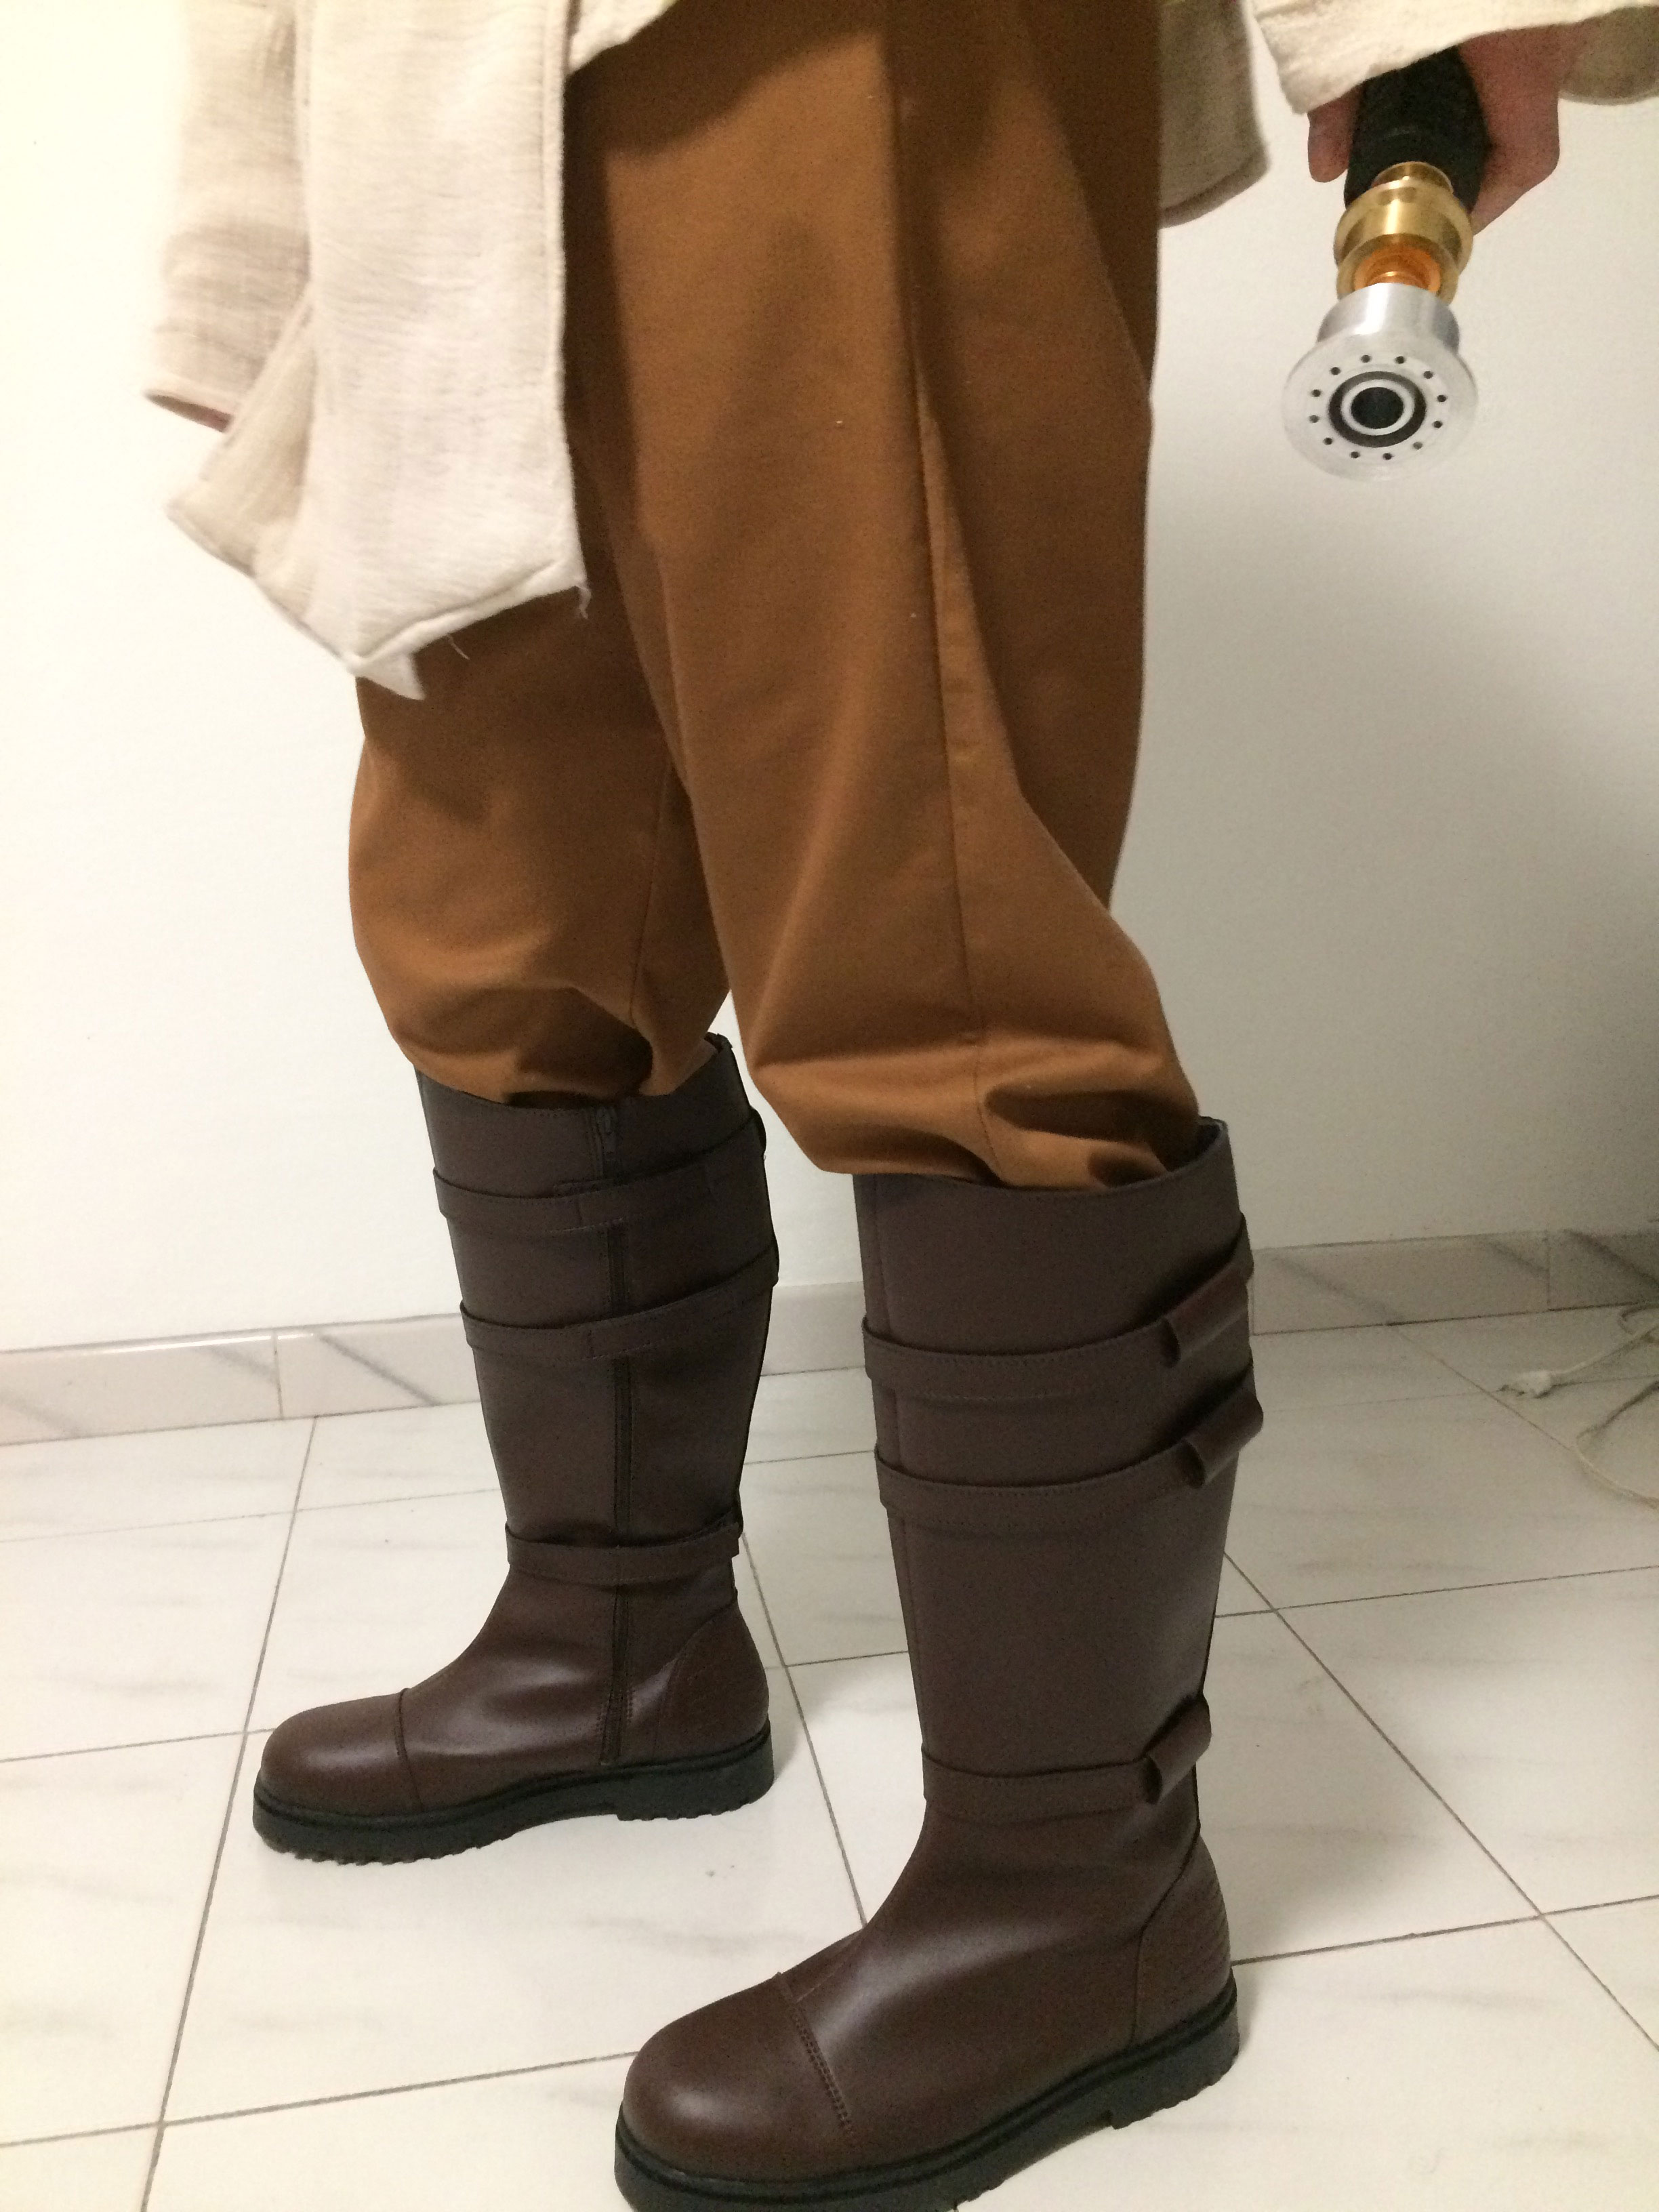 Star Wars Obi-Wan Kenobi Roberto replica boot costume review